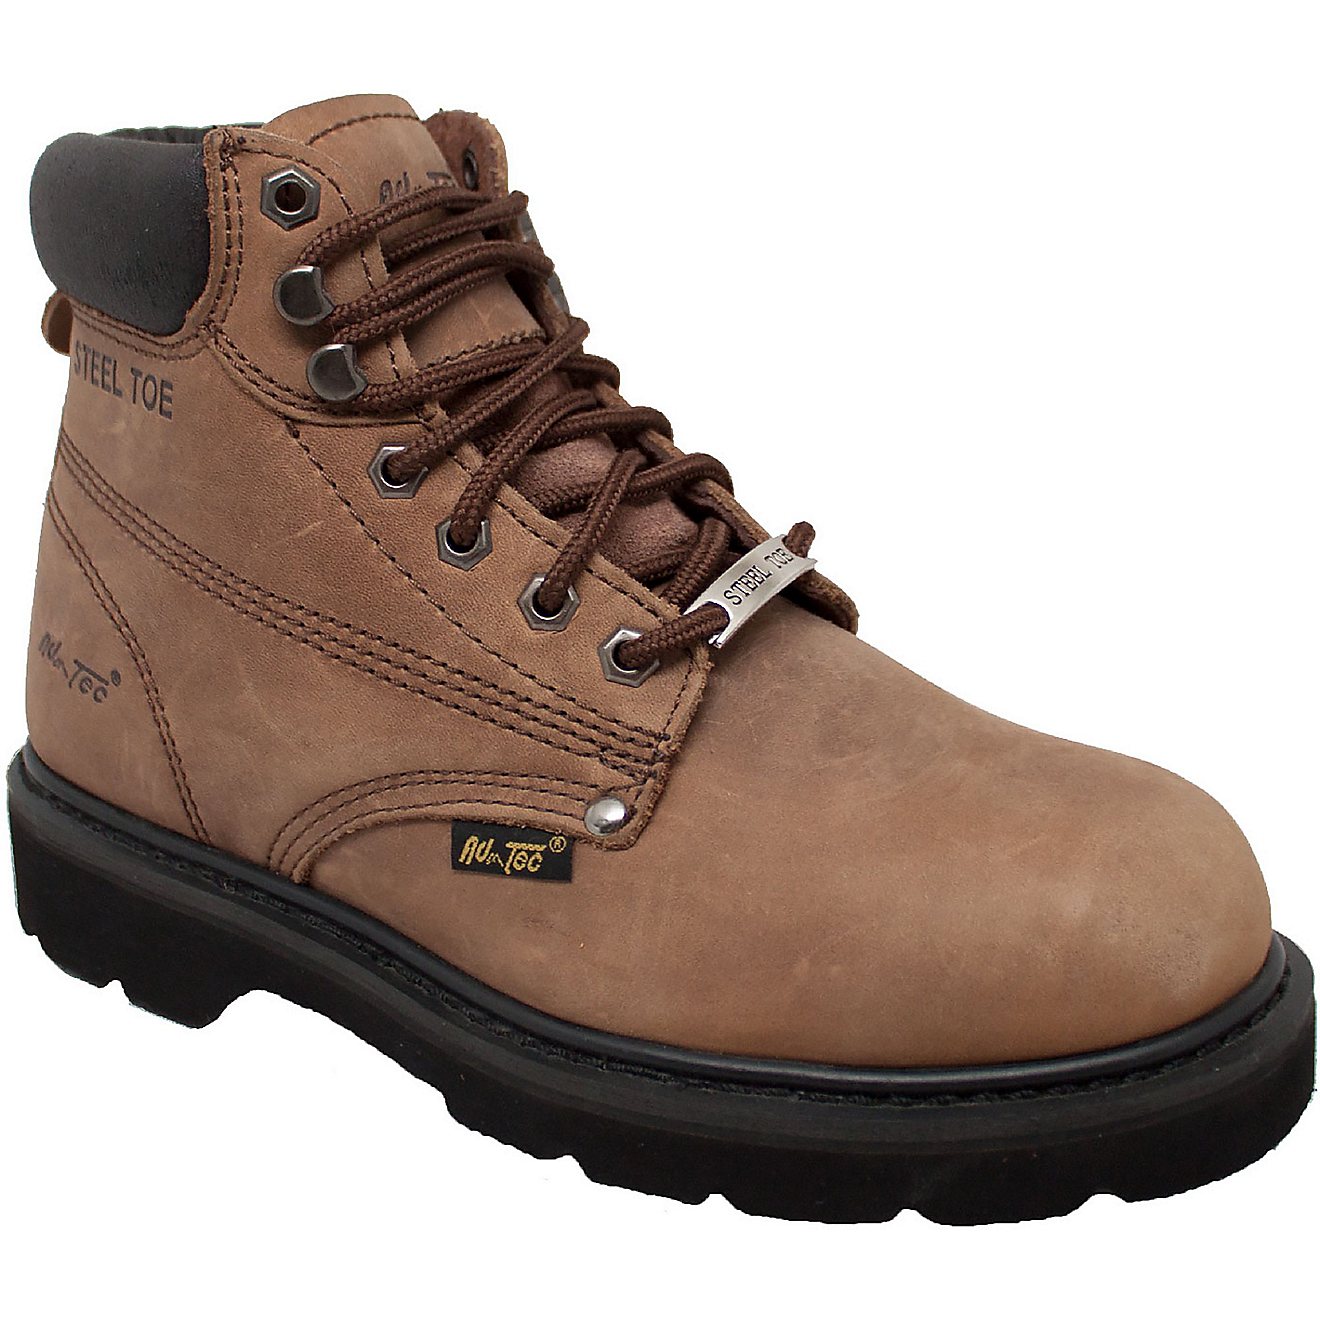 AdTec Men’s 6 in Nubuck Steel Toe Work Boots                                                                                   - view number 2